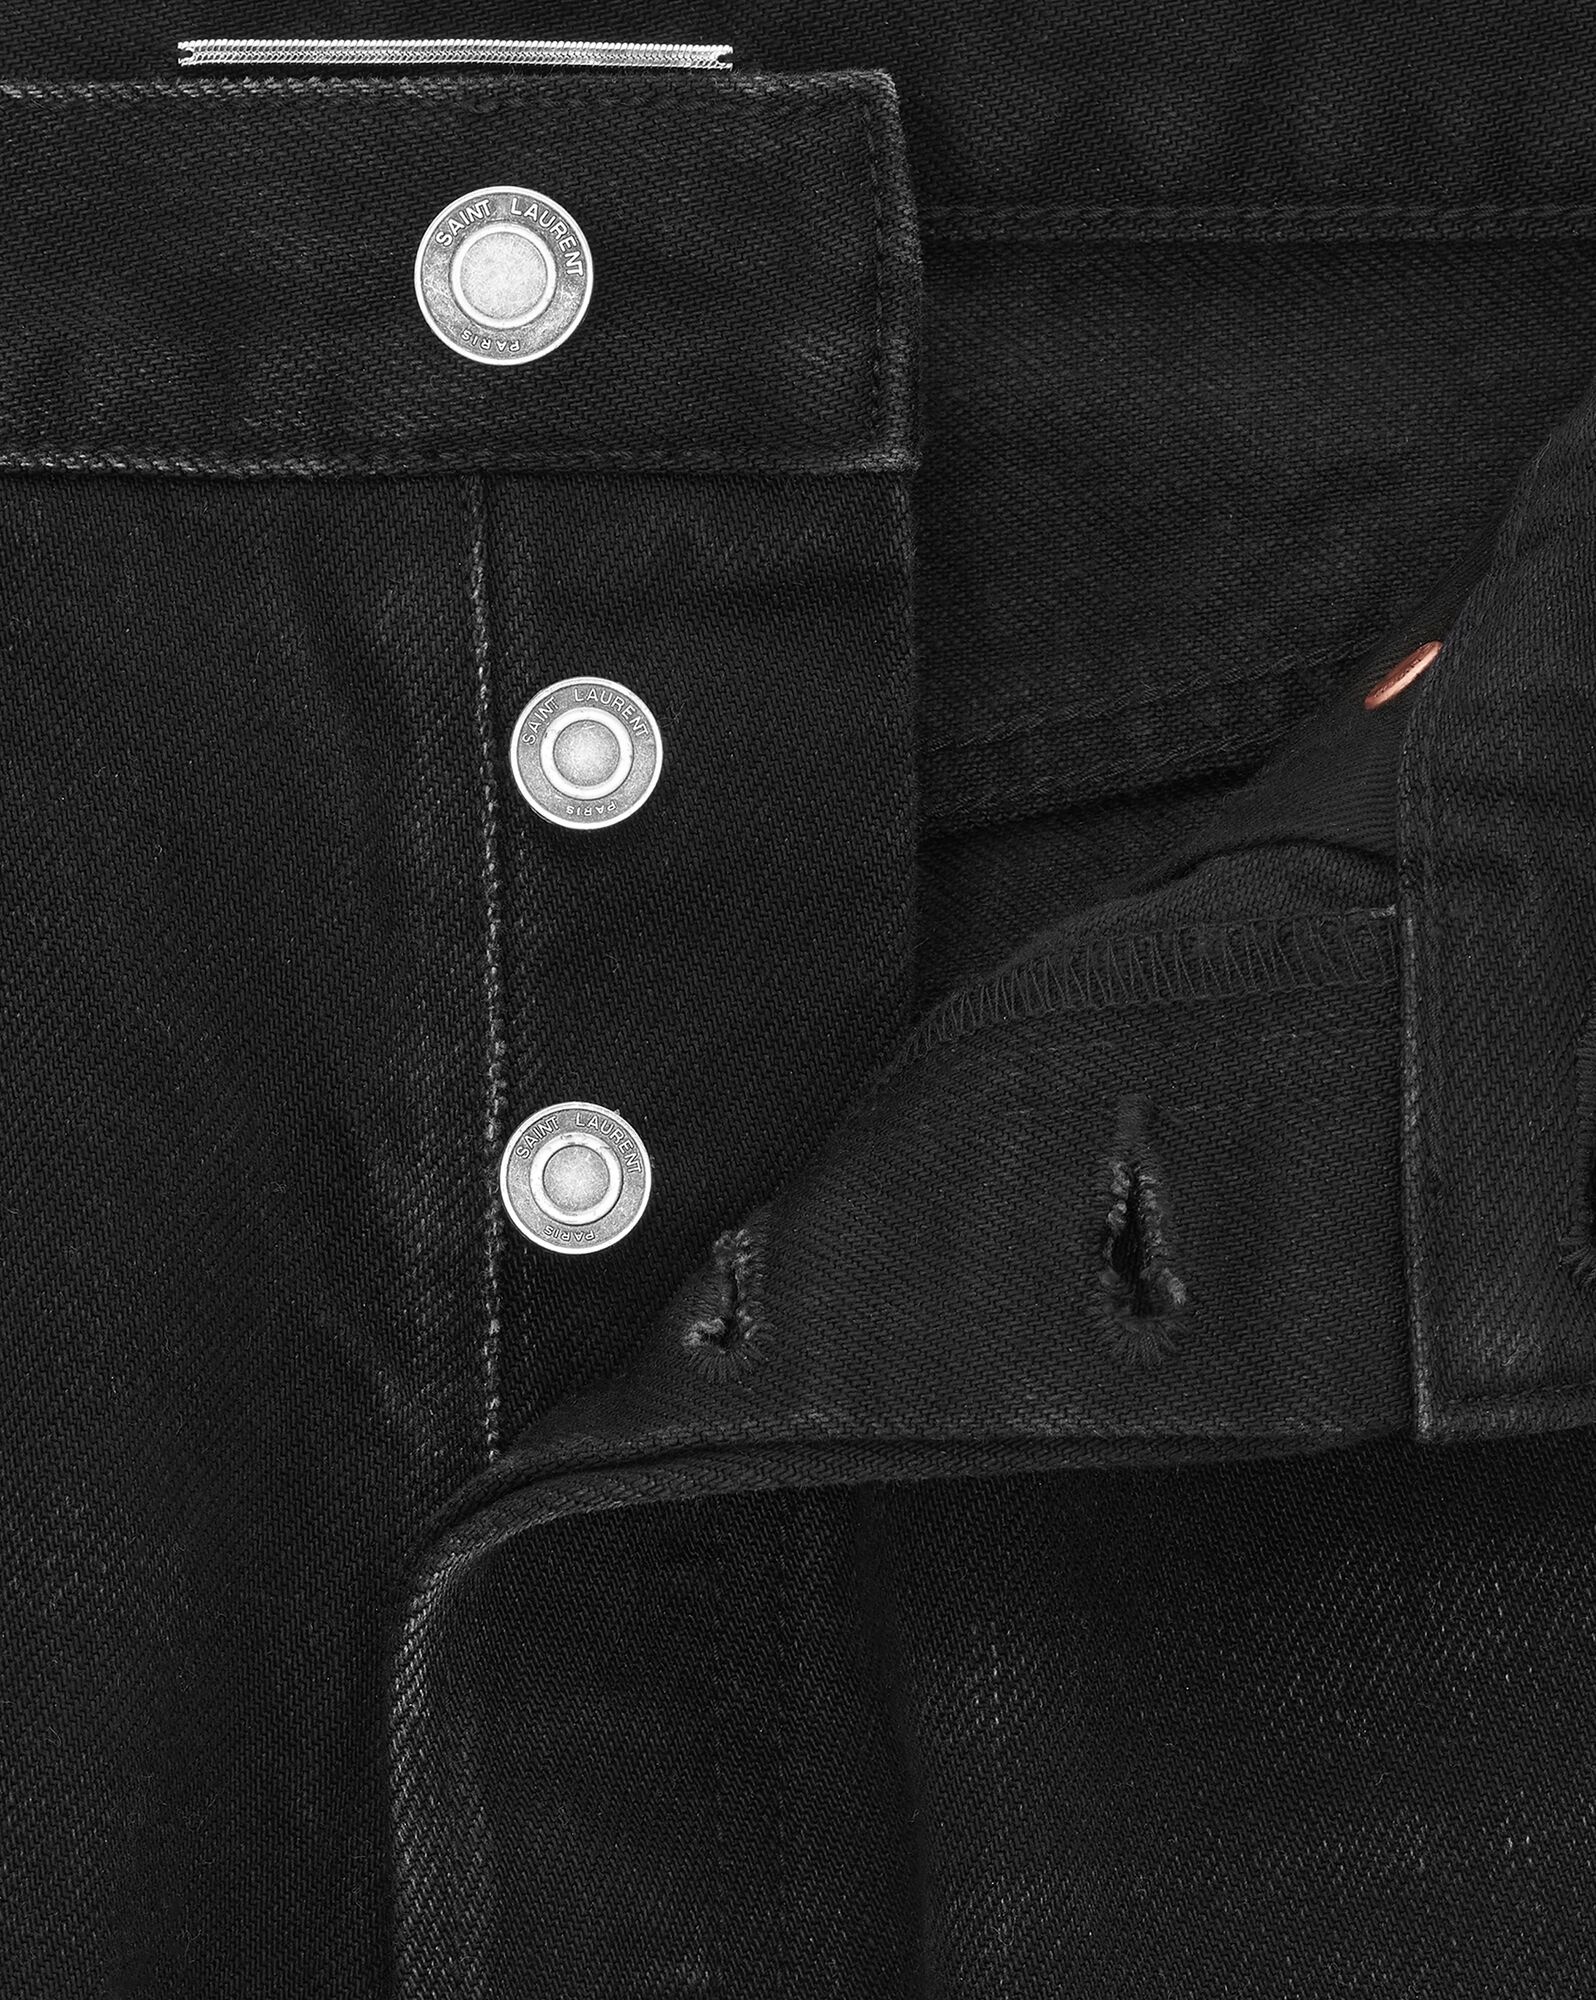 mick jeans in black denim - 3